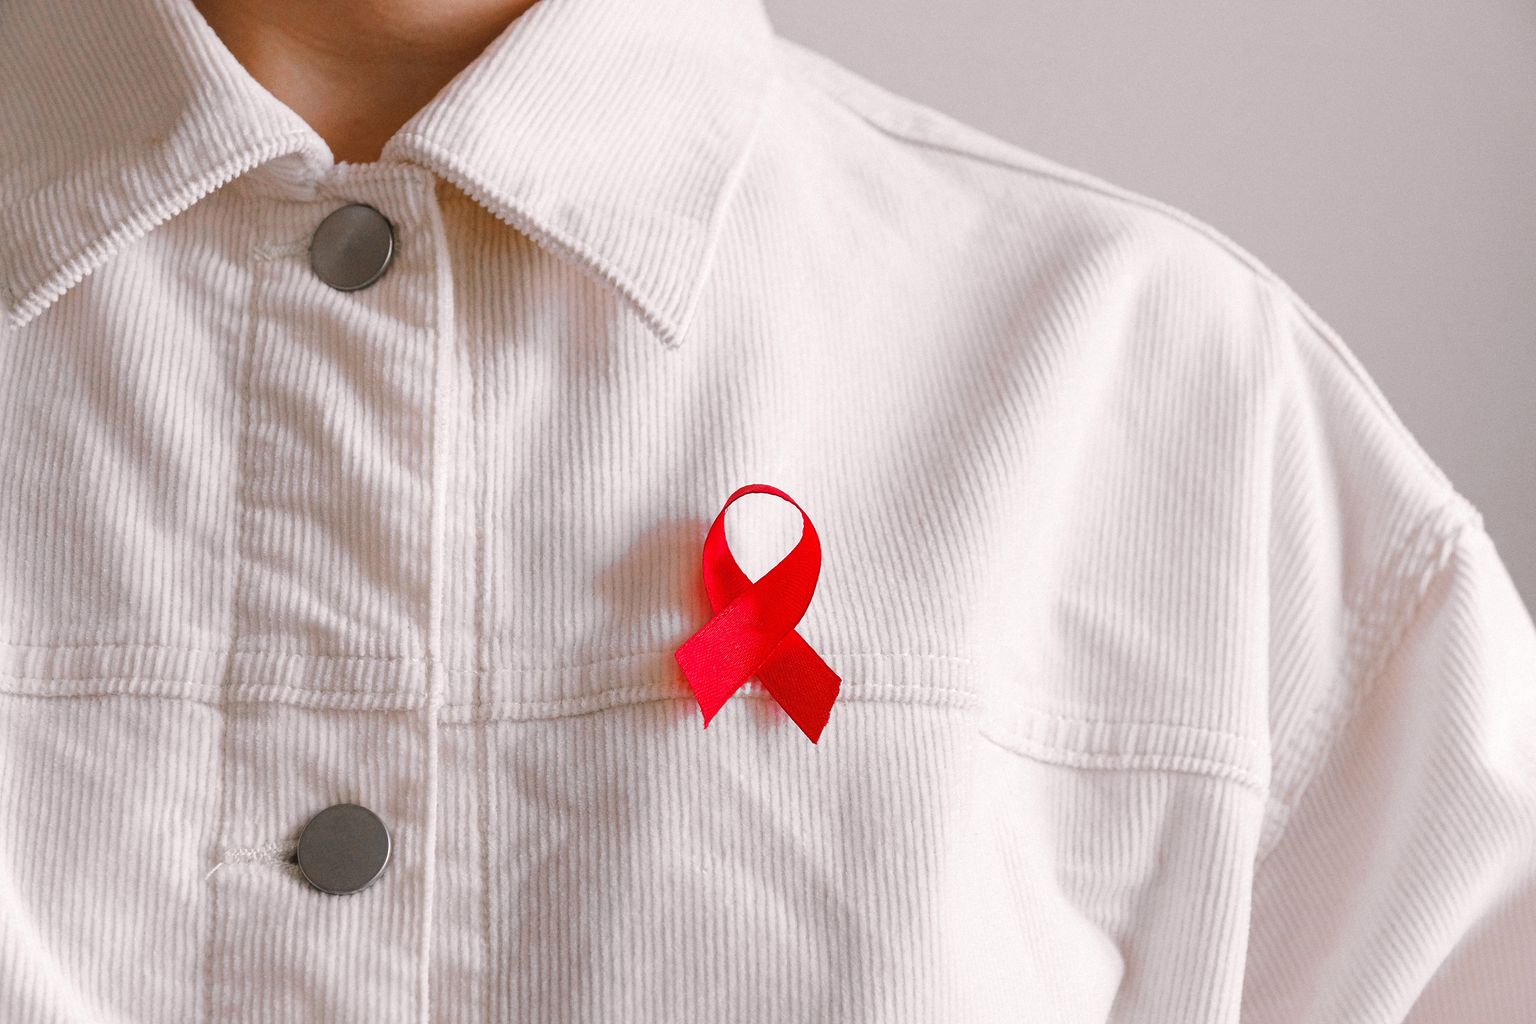 Uma pessoa com uma camisa branca veste uma fita vermelha, símbolo de solidariedade com pessoas infectadas pelo VIH e doentes com SIDA.